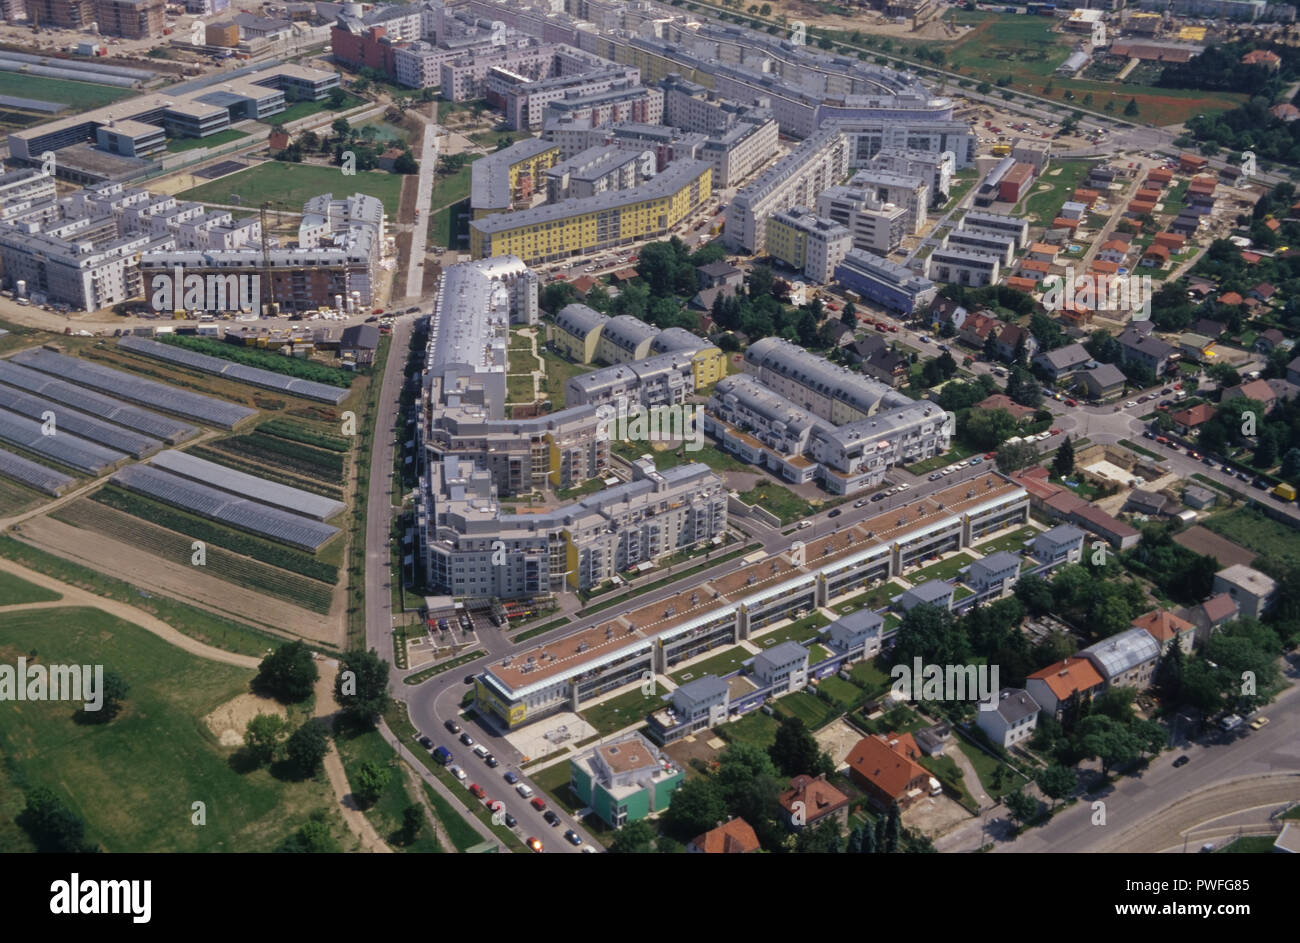 Wien, Wohnbau der 1980er Jahre, Leberberg, Luftbild Foto Stock